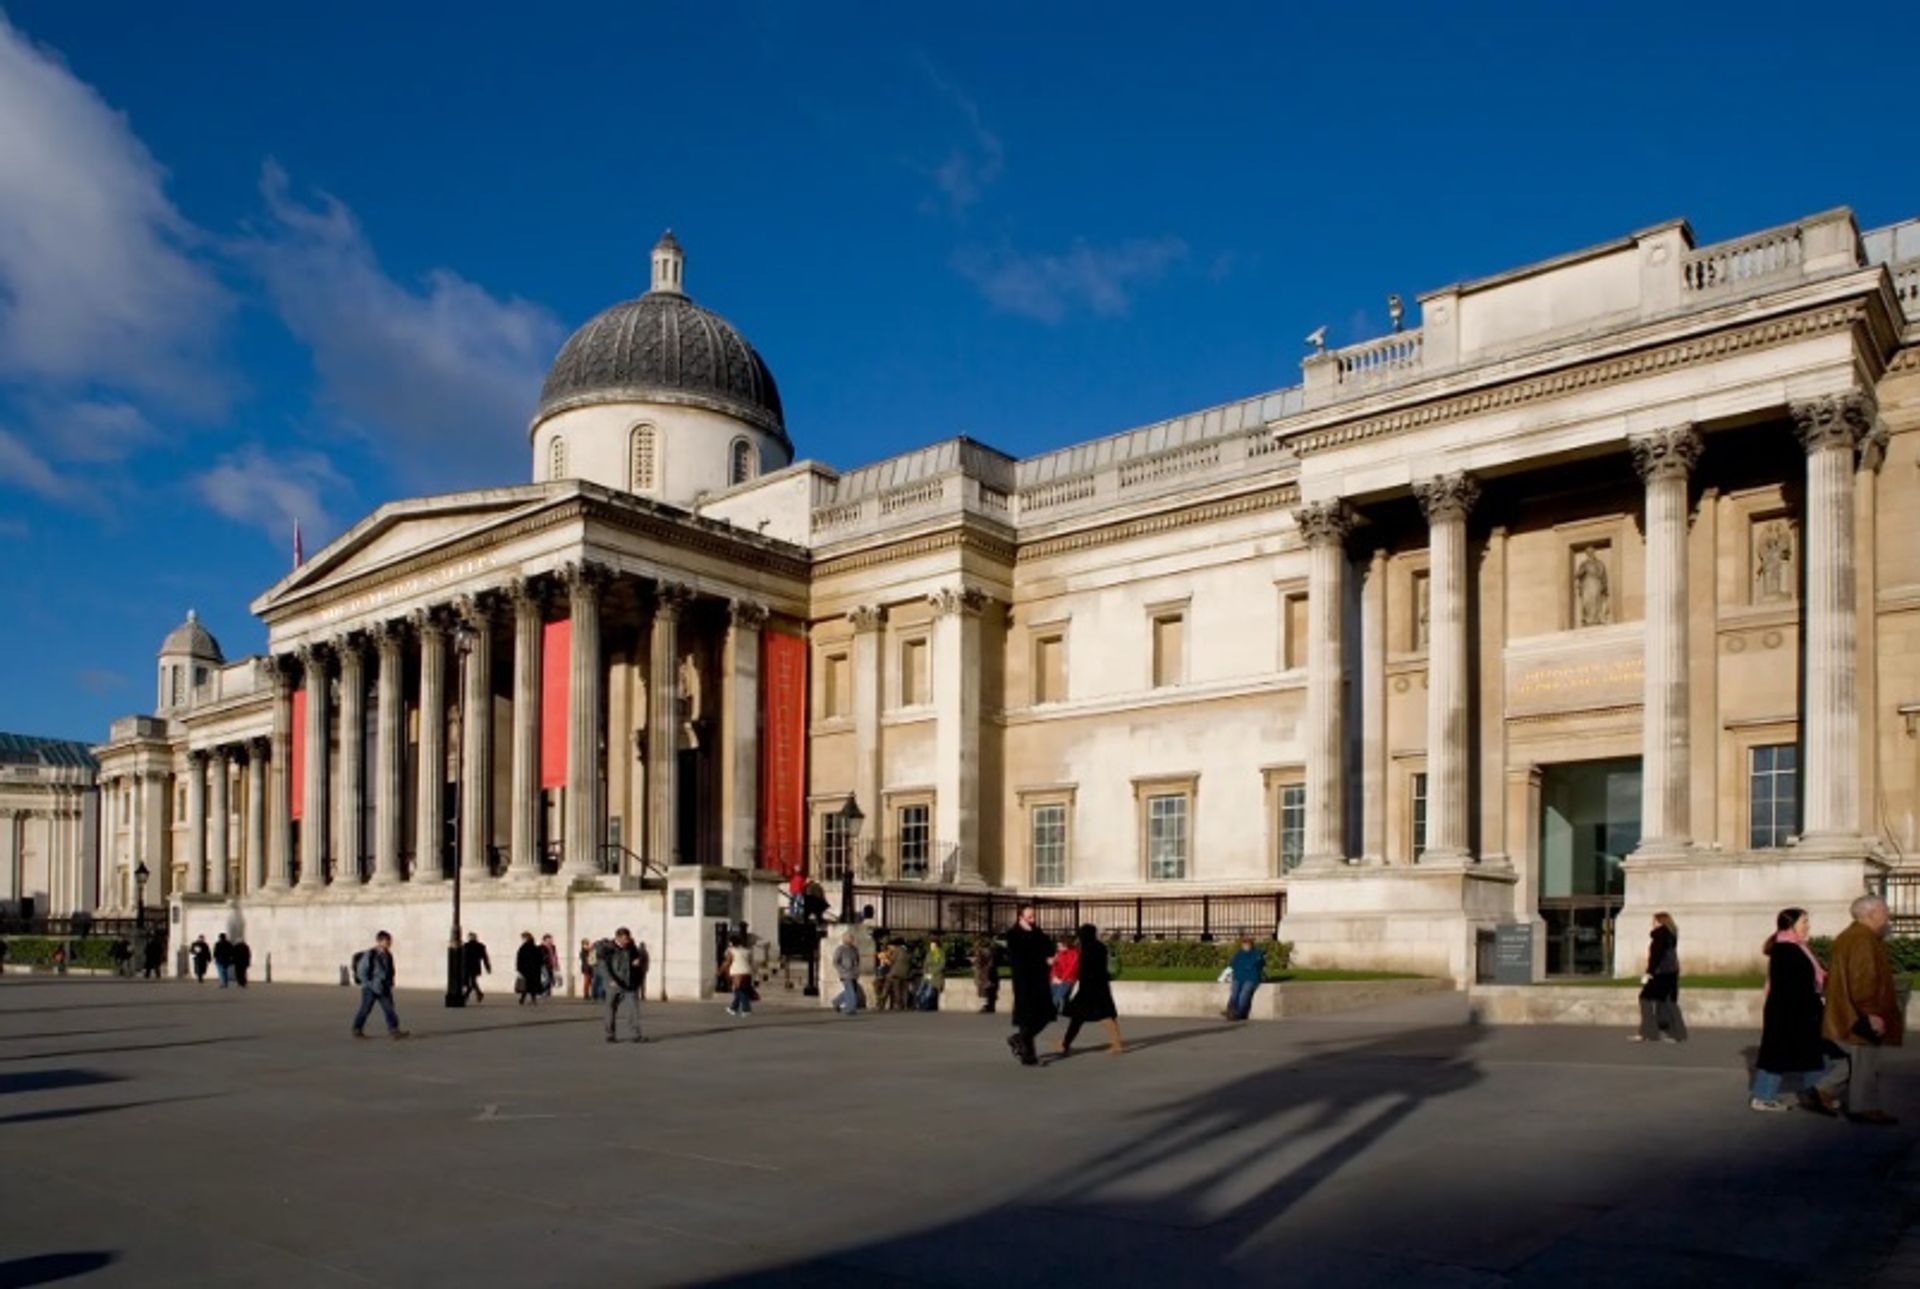 הגלריה הלאומית בלונדון מצטרפת למוסדות אחרים בבריטניה ומסירה את השם סאקלר

© הגלריה הלאומית, לונדון